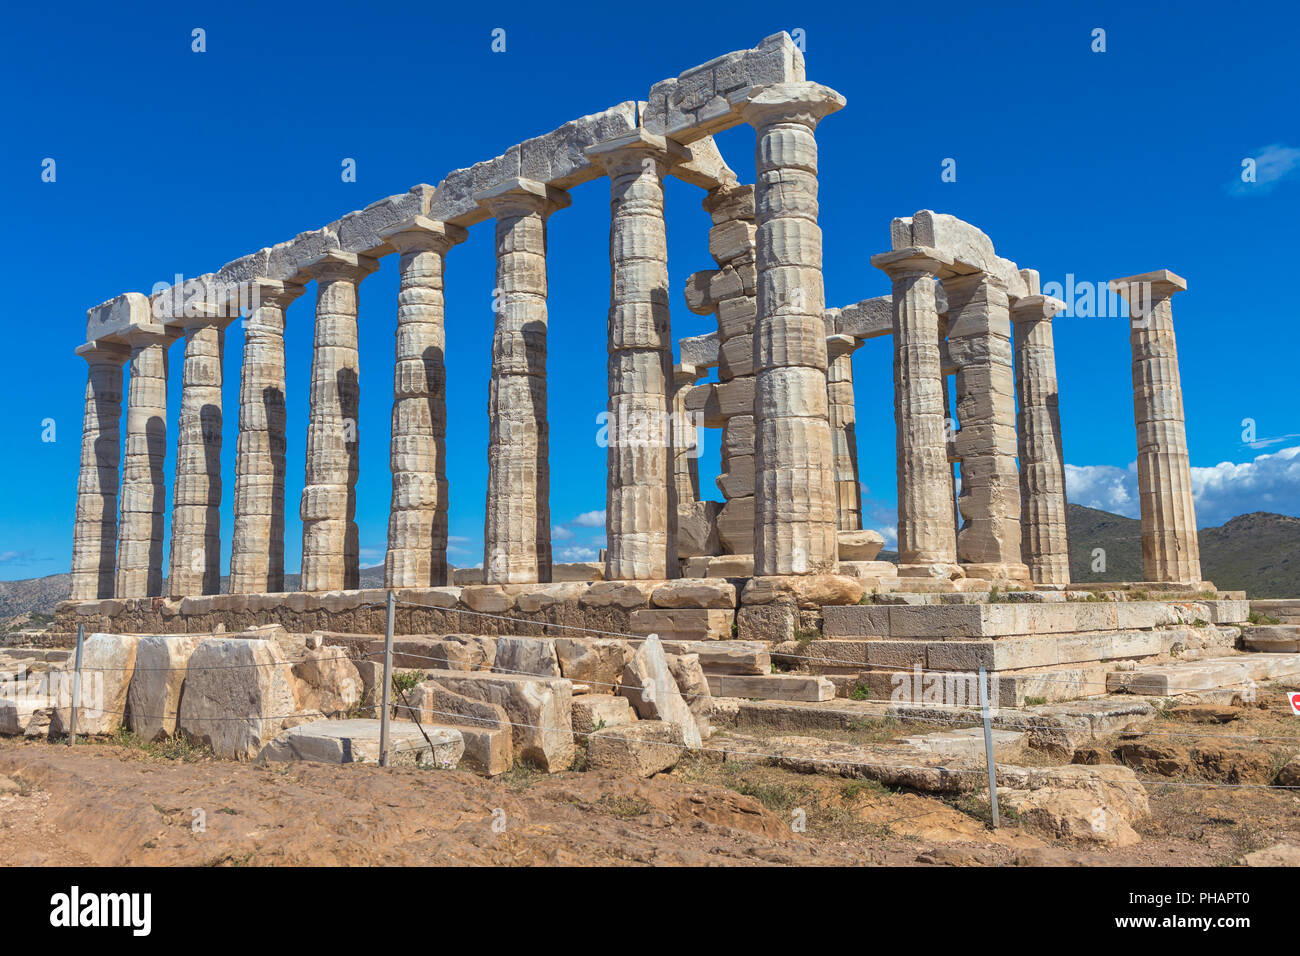 Poseidon temple (440 BC), Cape Sounio, Sounion, Attica, Greece Stock Photo